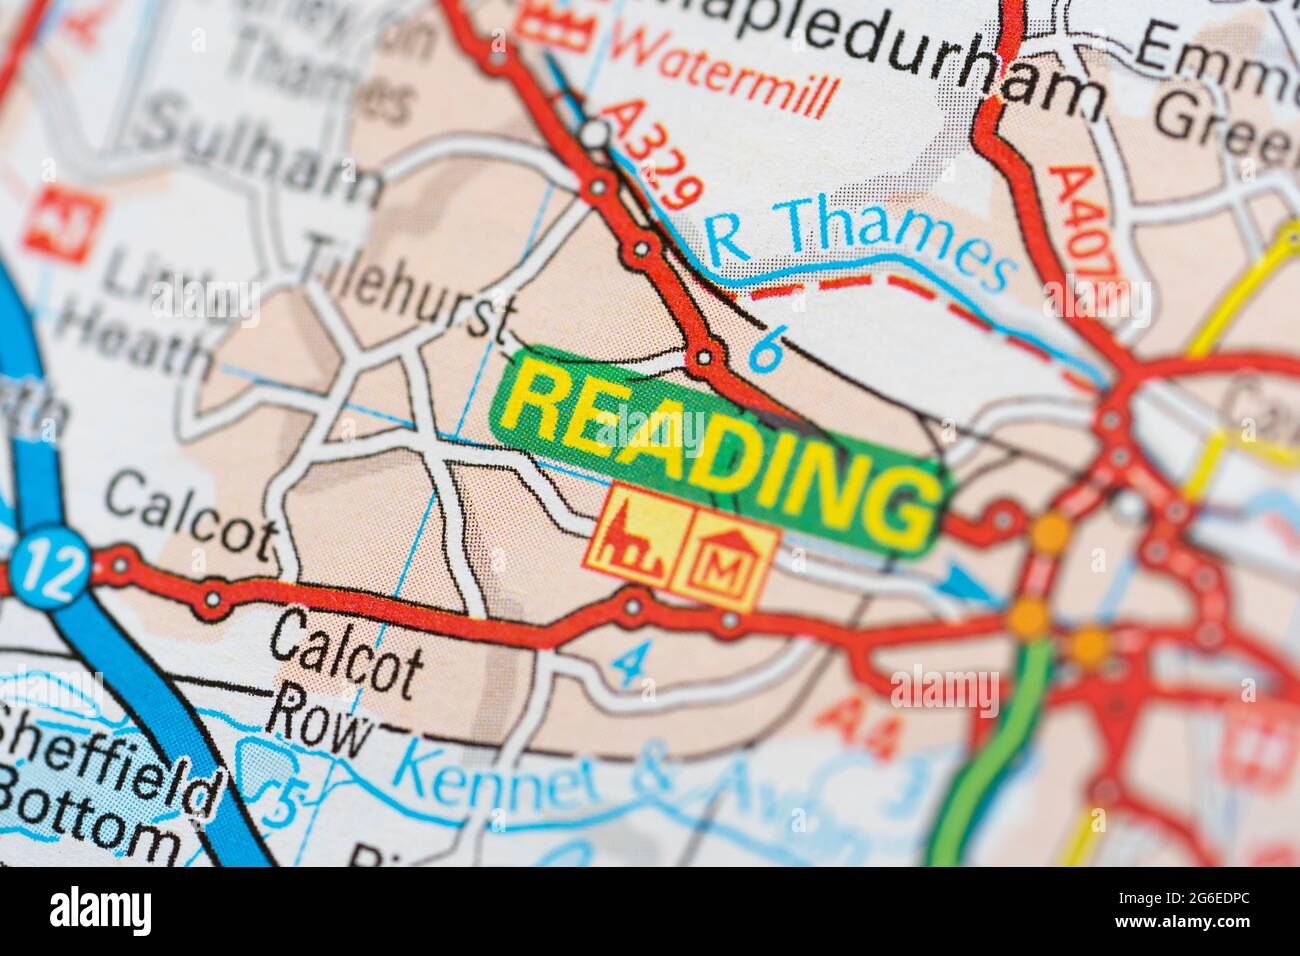 Eine Makroaufnahme einer Seite in einem gedruckten Roadmap-Atlas, der die Stadt Reading in der Grafschaft von Bekshire, England, zeigt Stockfoto